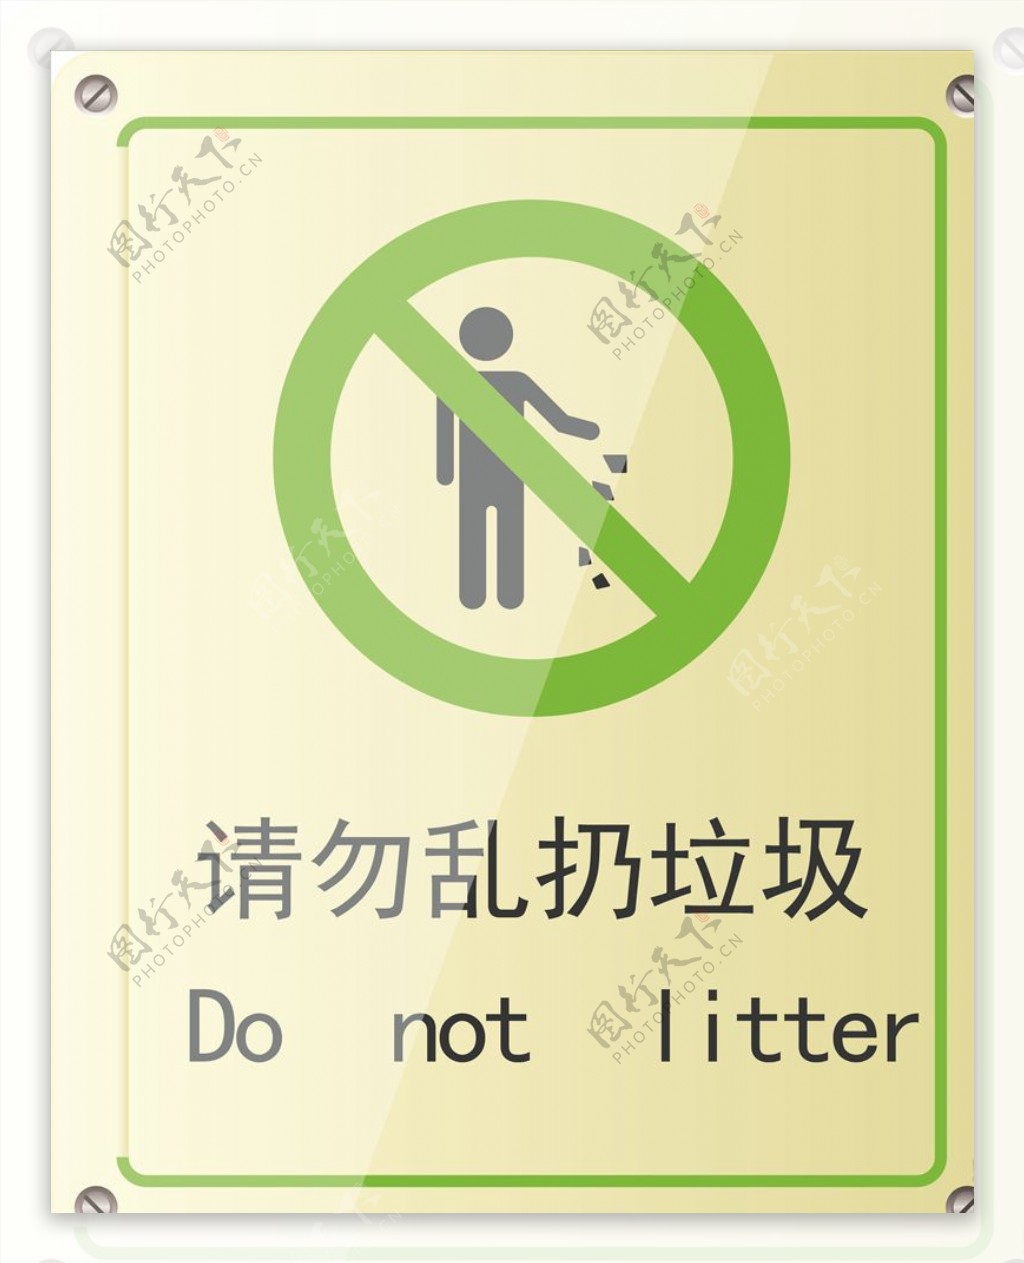 温馨提示请勿乱扔垃圾绿色提示牌